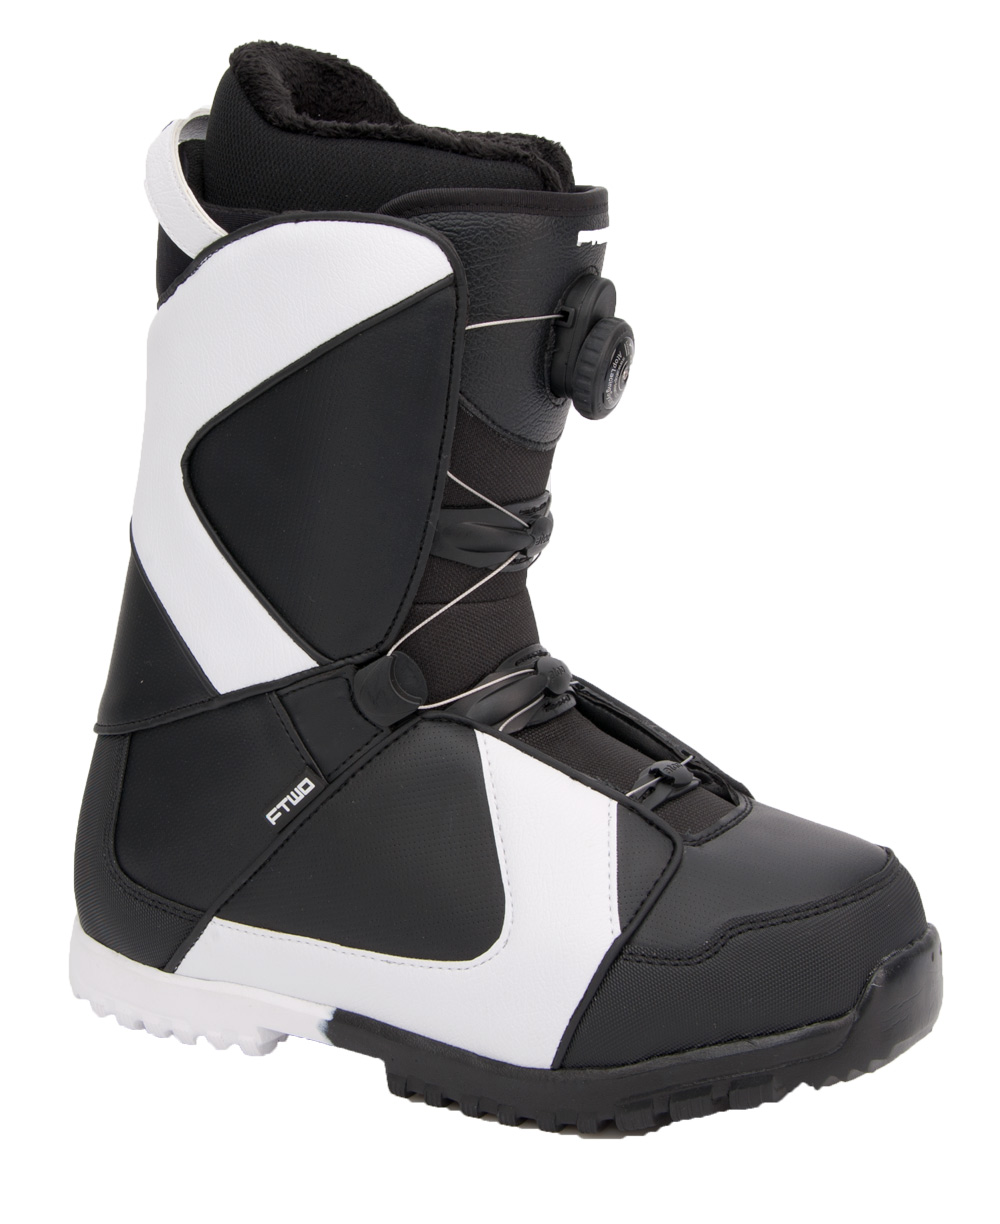 Ботинки сноубордические F2 Air размер 27,5 black/black 